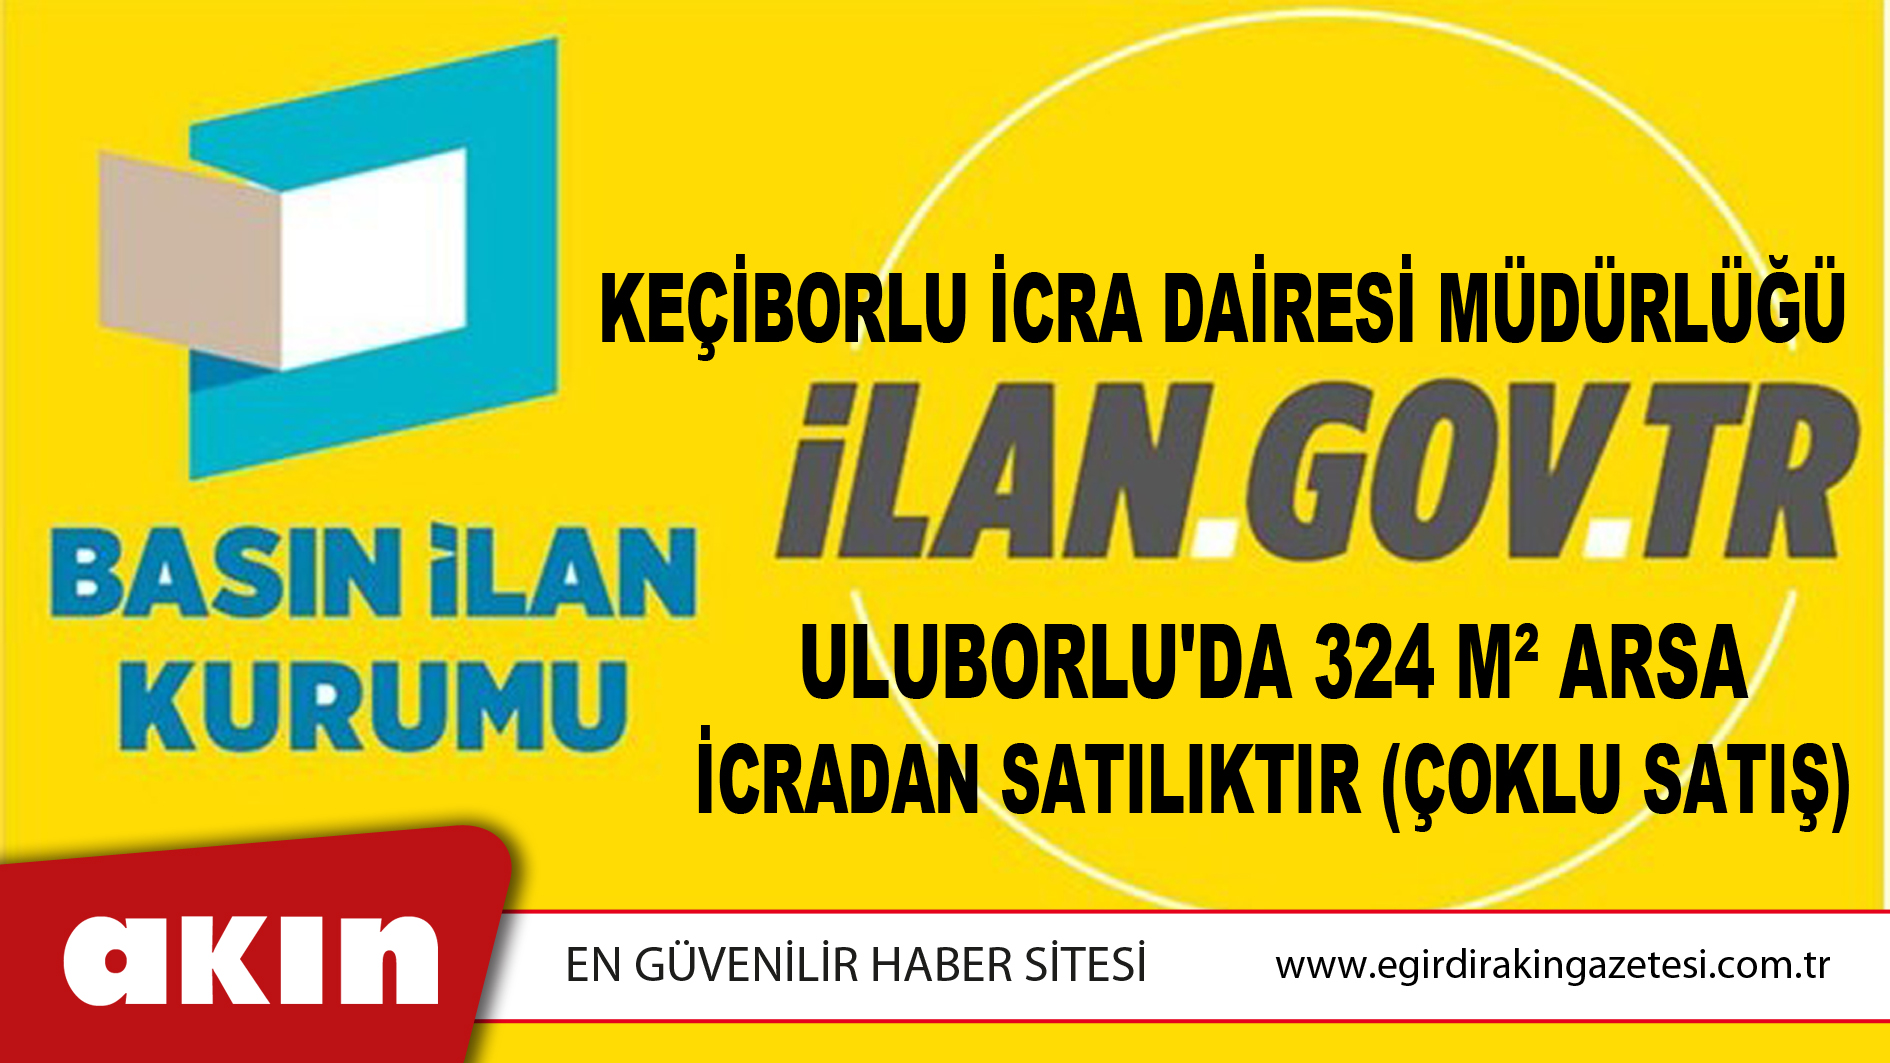 Keçiborlu İcra Dairesi Müdürlüğü Uluborlu'da 324 M² Arsa İcradan Satılıktır (Çoklu Satış)